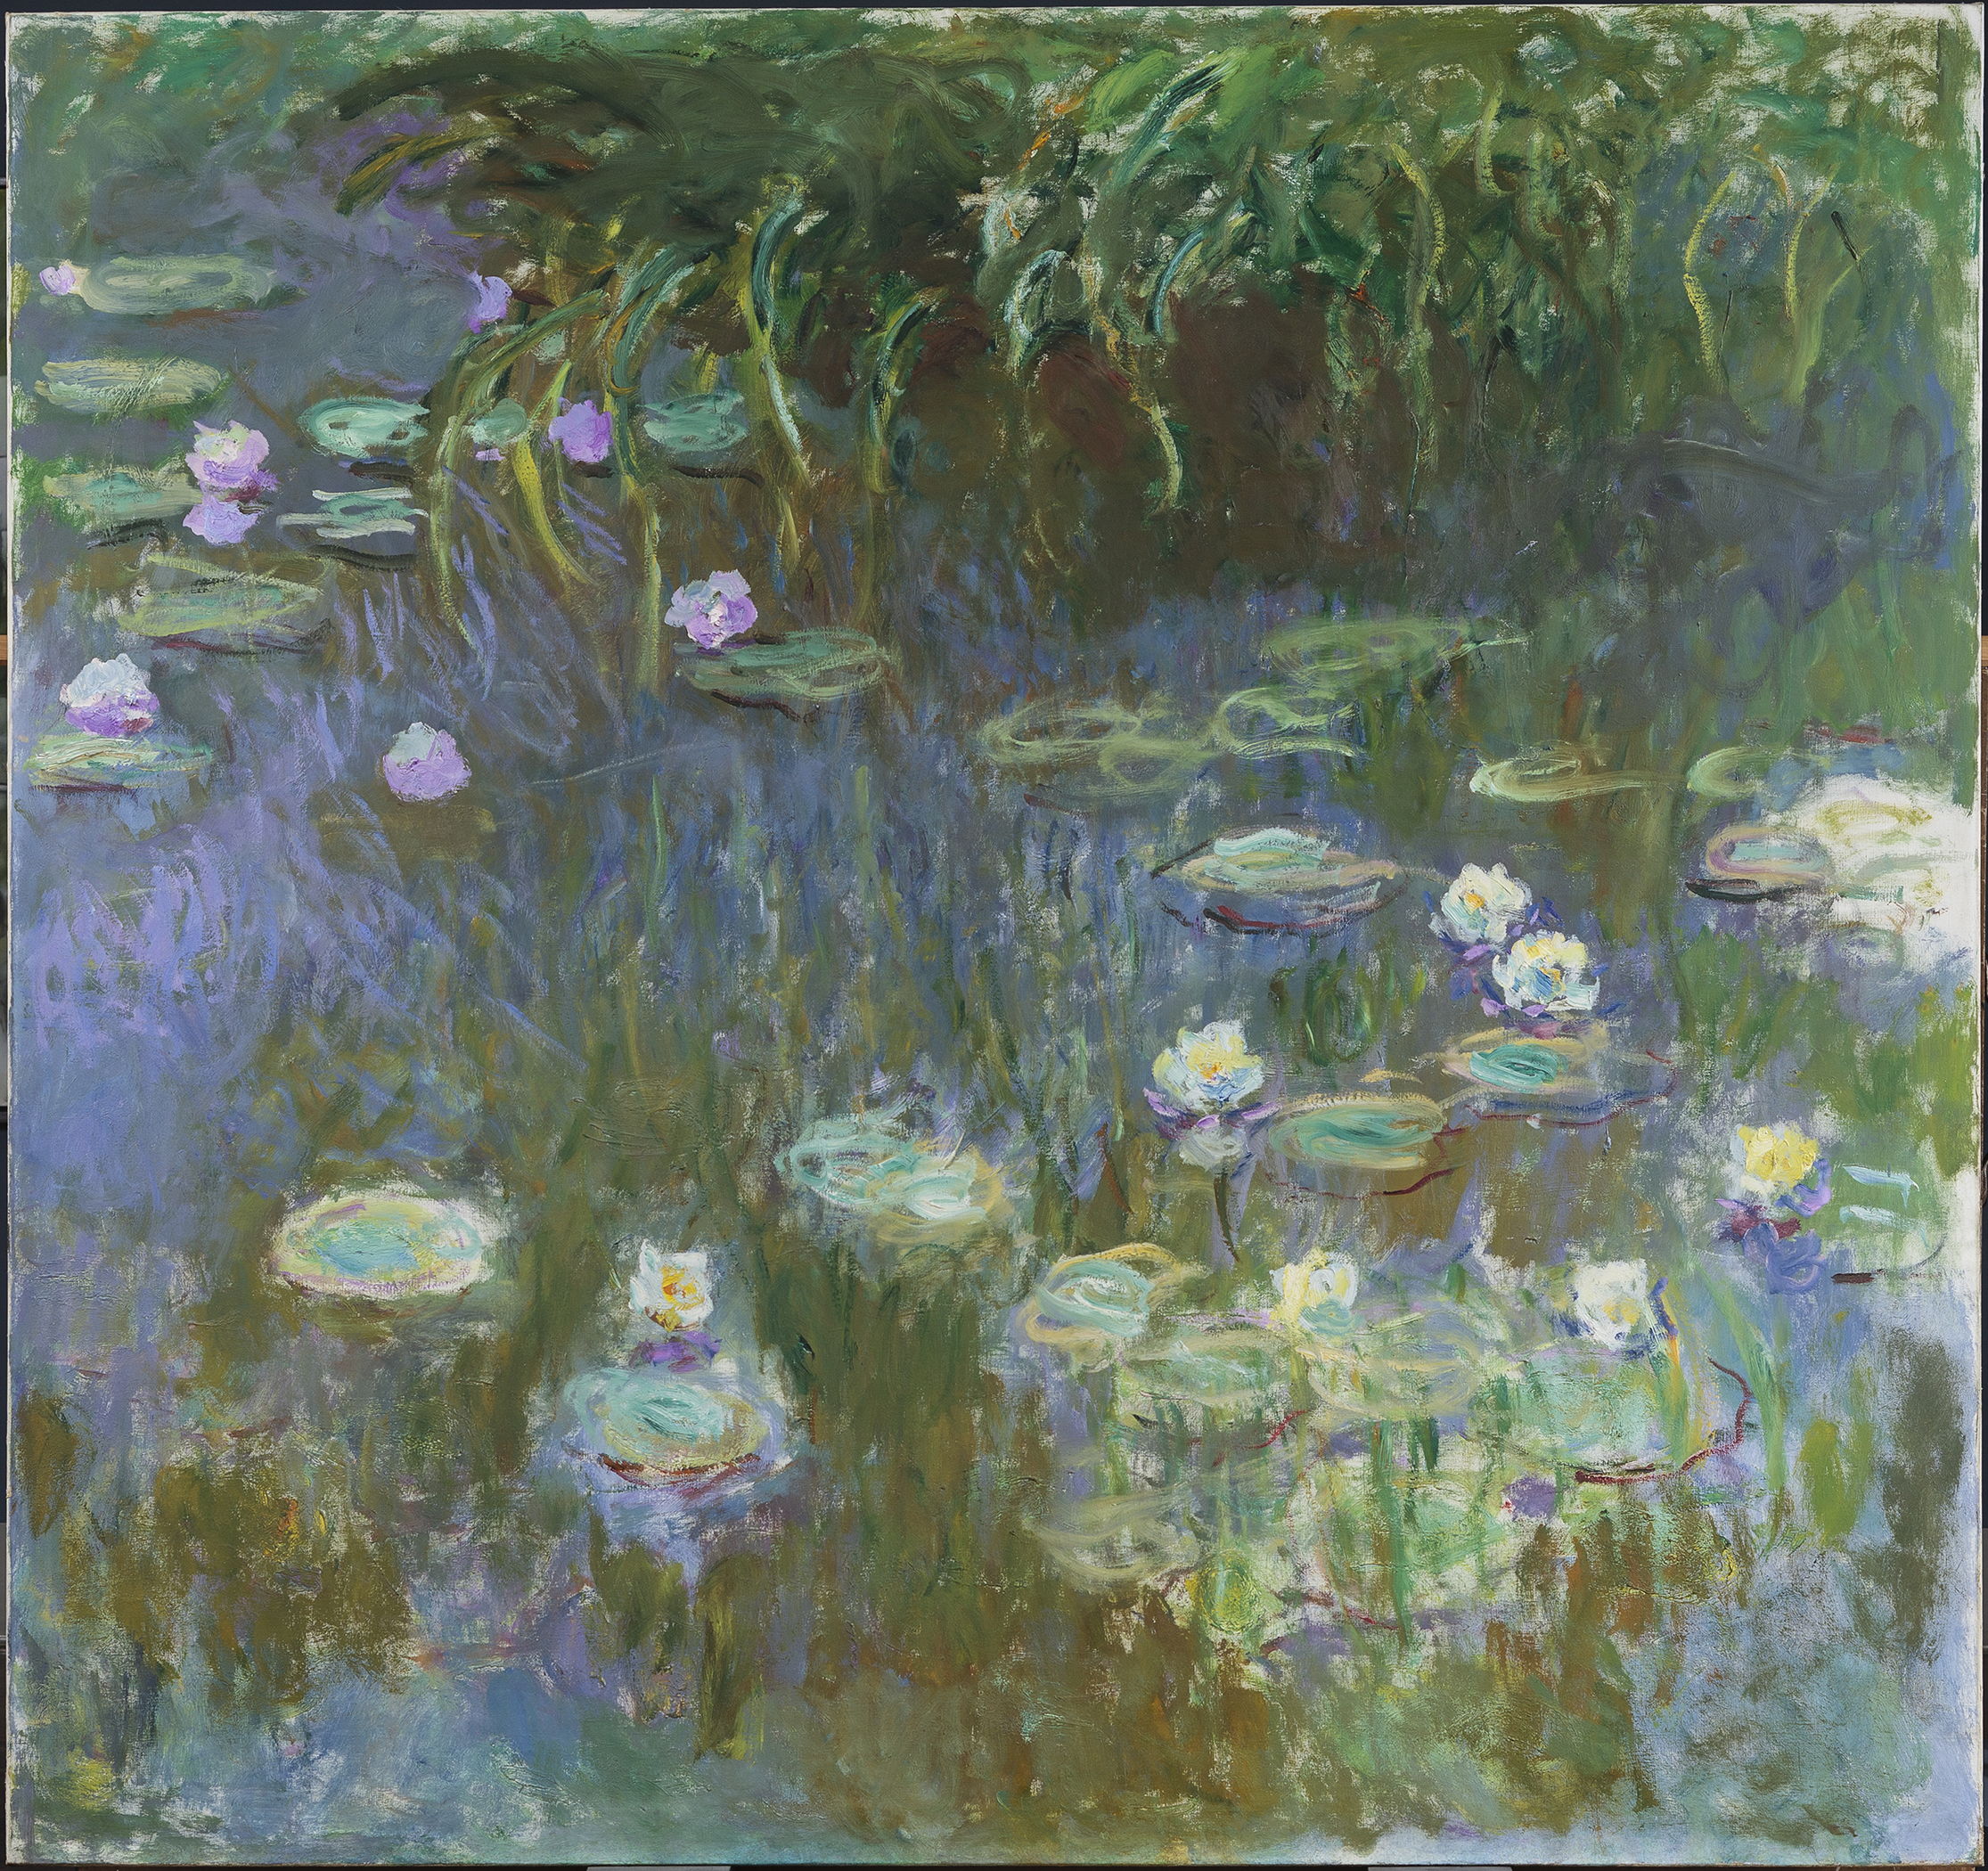 زنابق الماء by Claude Monet - ١٩٢٢ - 79 بوصة x 84 بوصة 